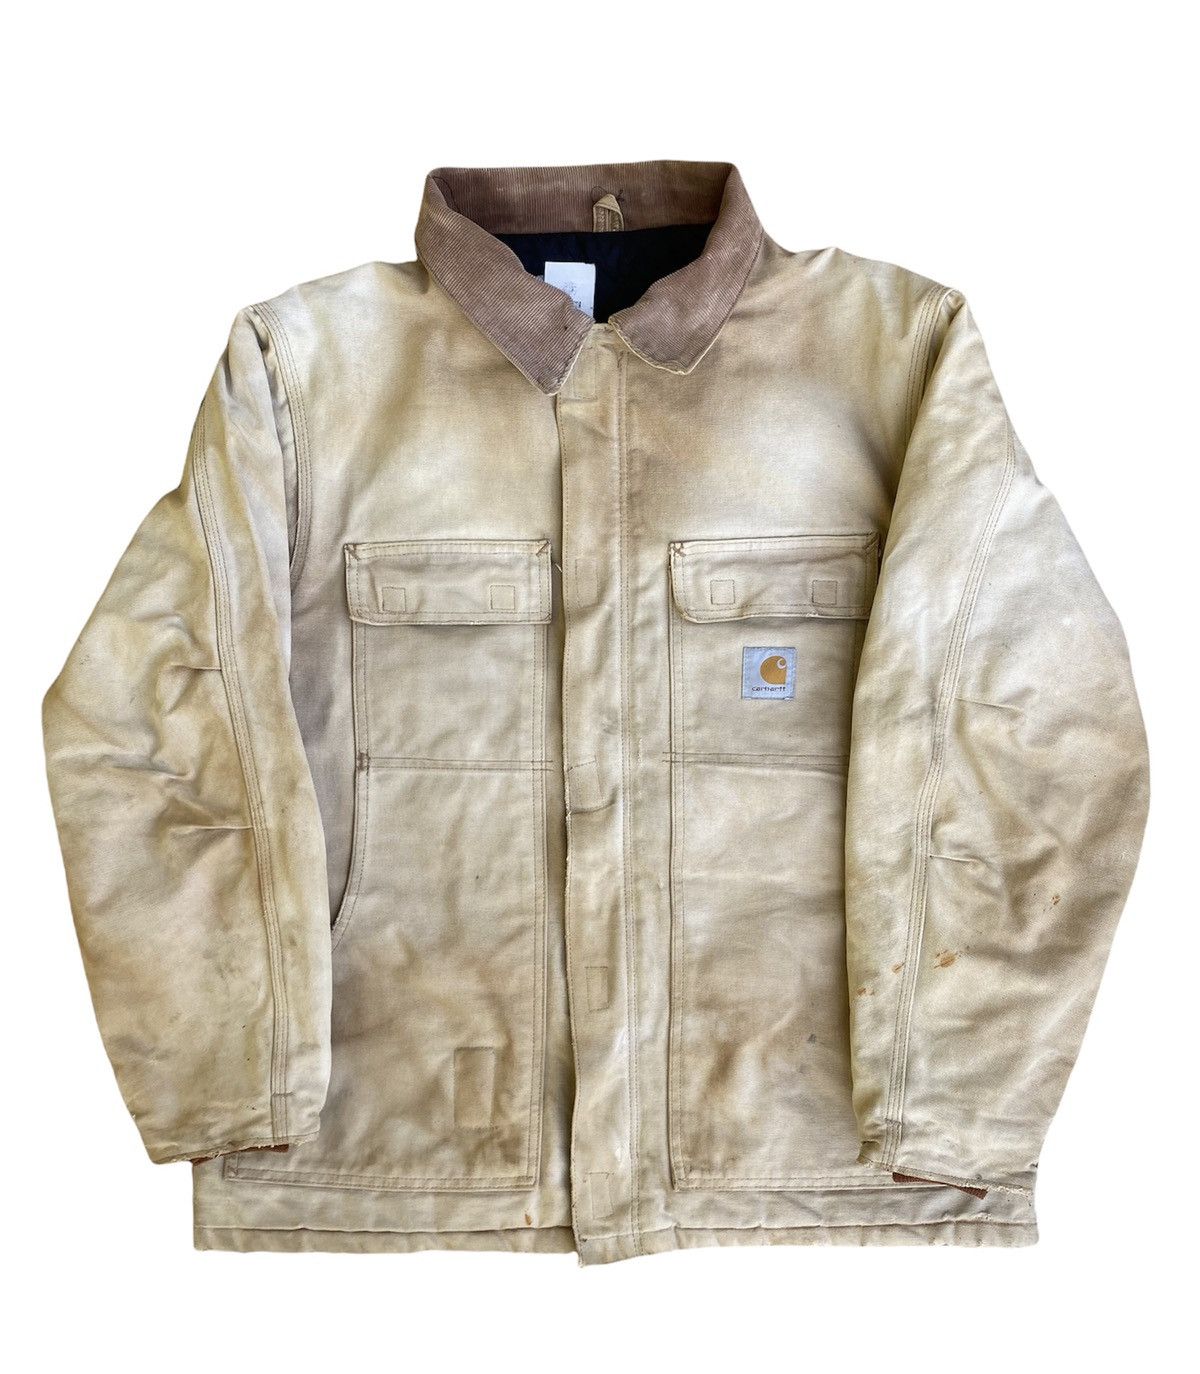 Vintage Vintage Trashed Carhartt Quilted Detroit Jacket | Grailed